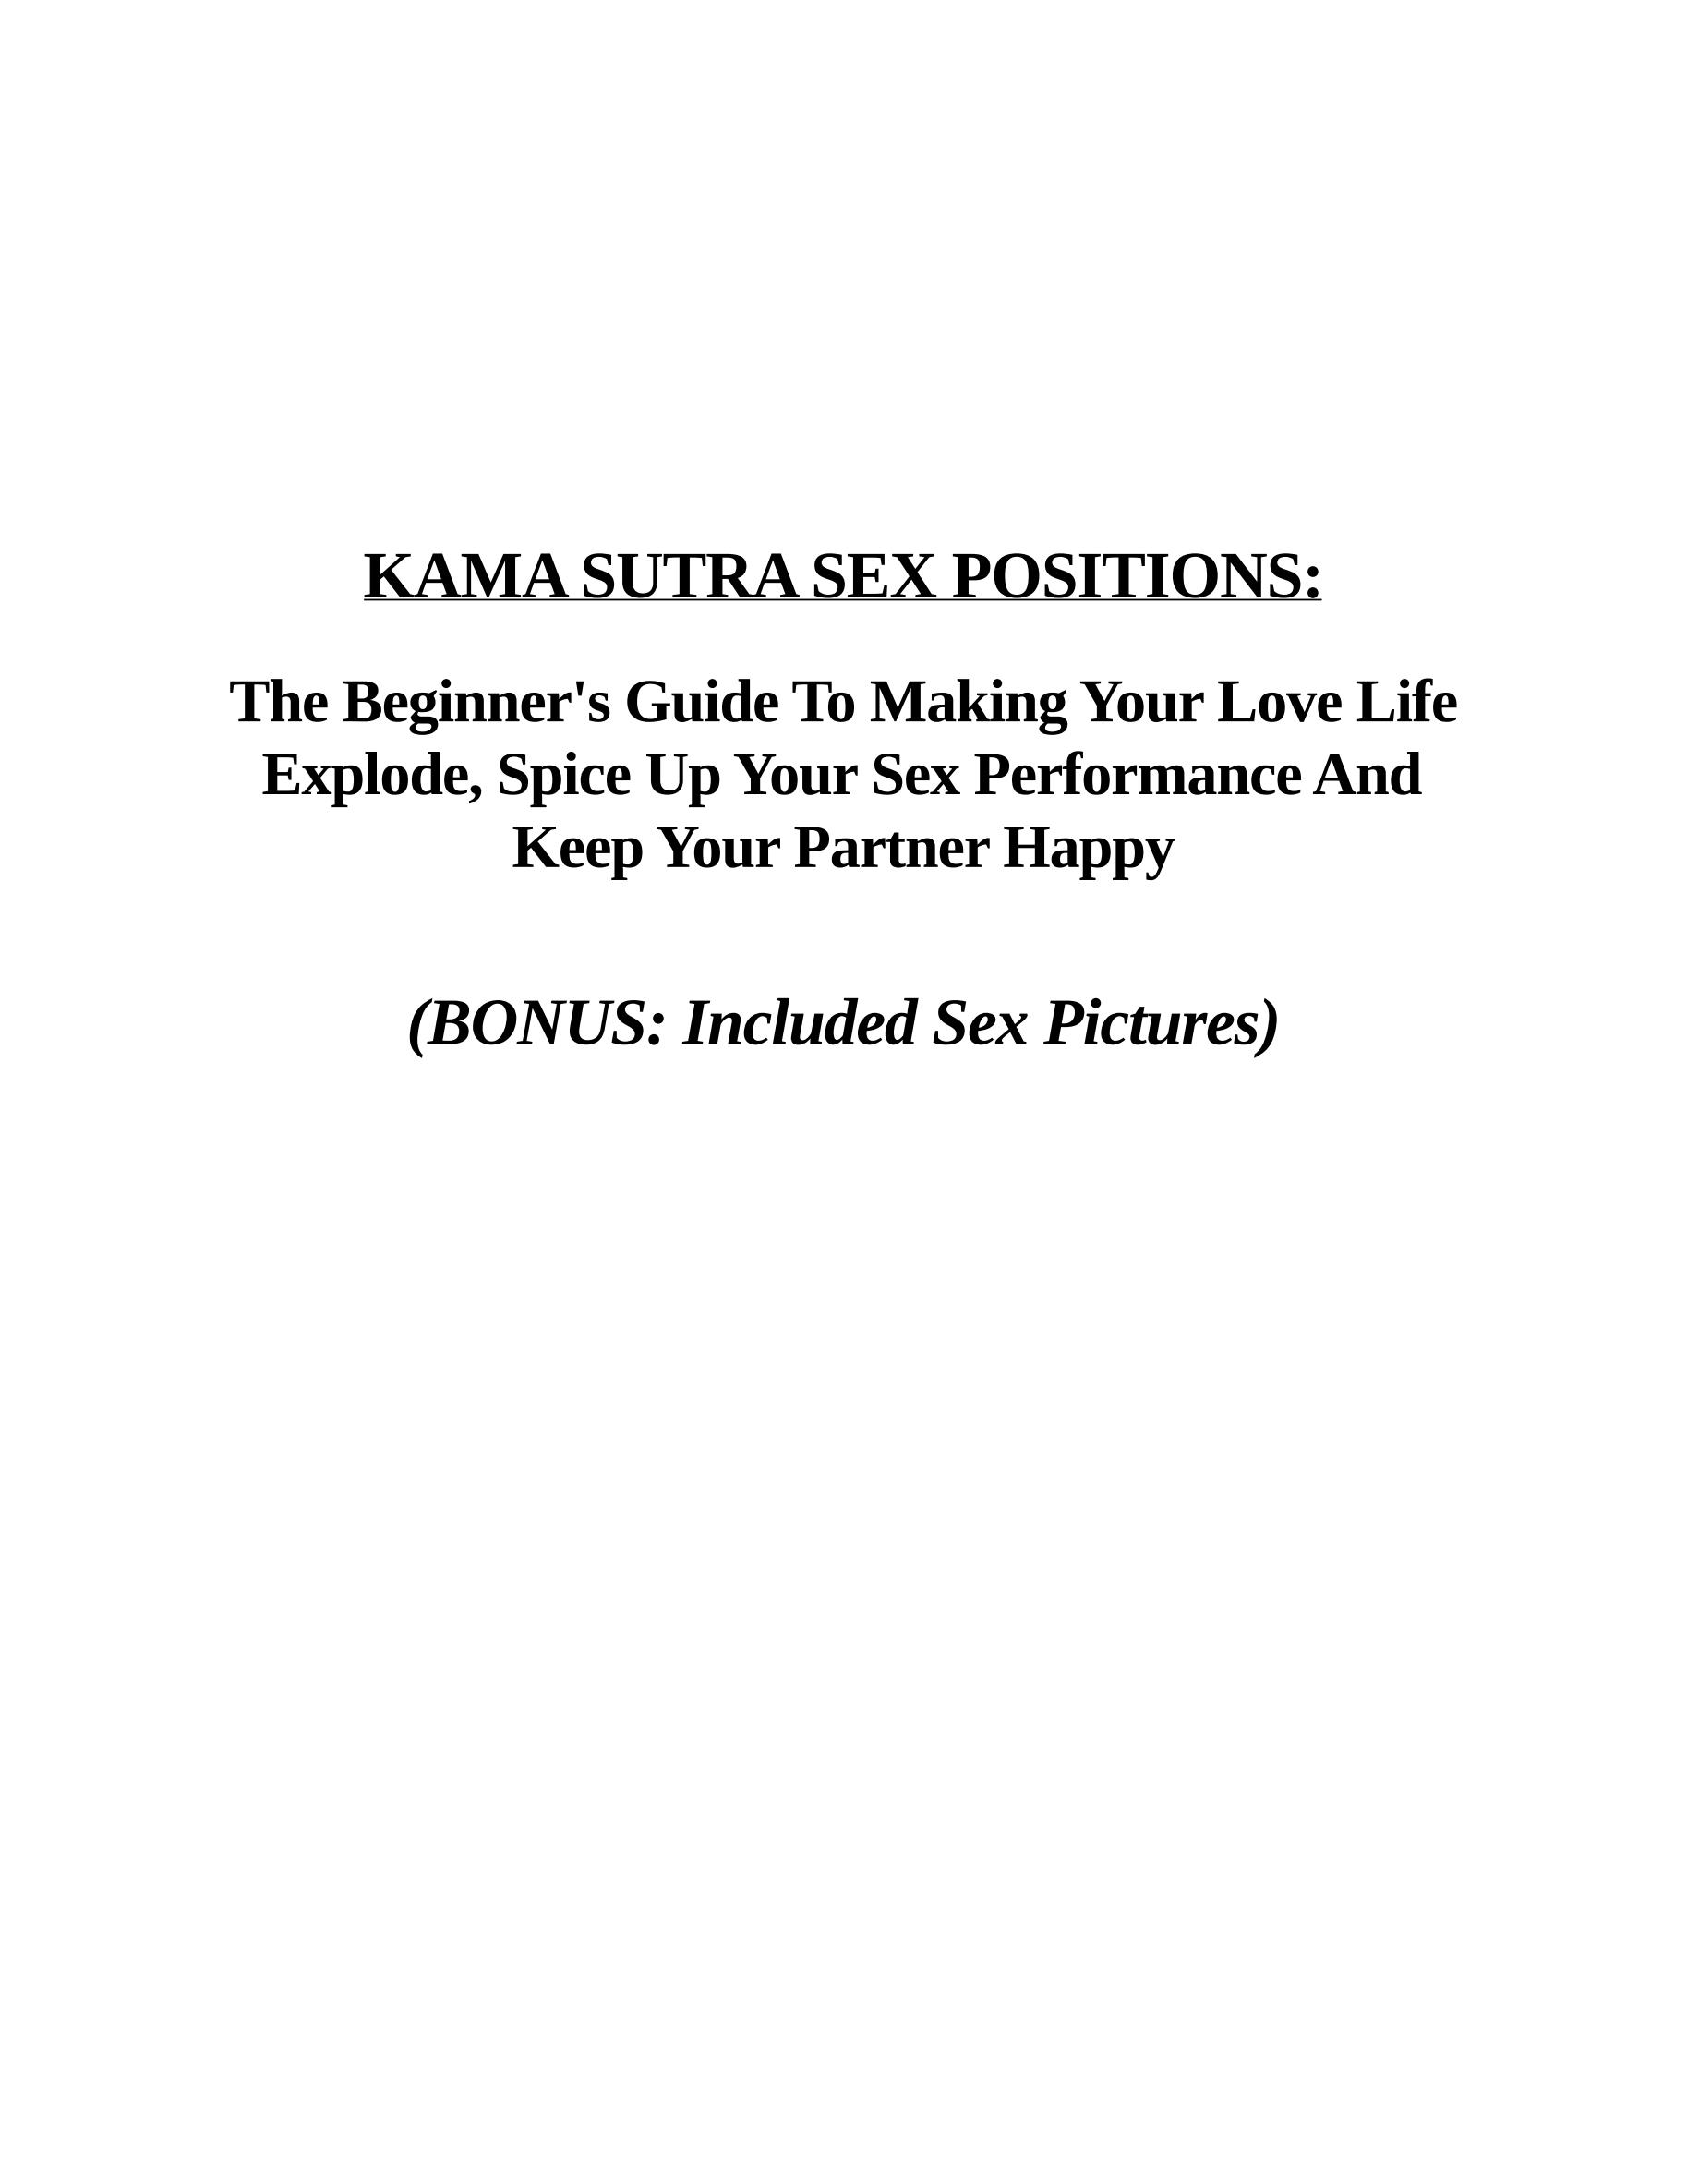 电子书 Kama Sutra 性爱姿势：让您的爱情生活爆发、为您的表现增添趣味并让您的伴侣快乐的初学者指南 英文库 报告厅 